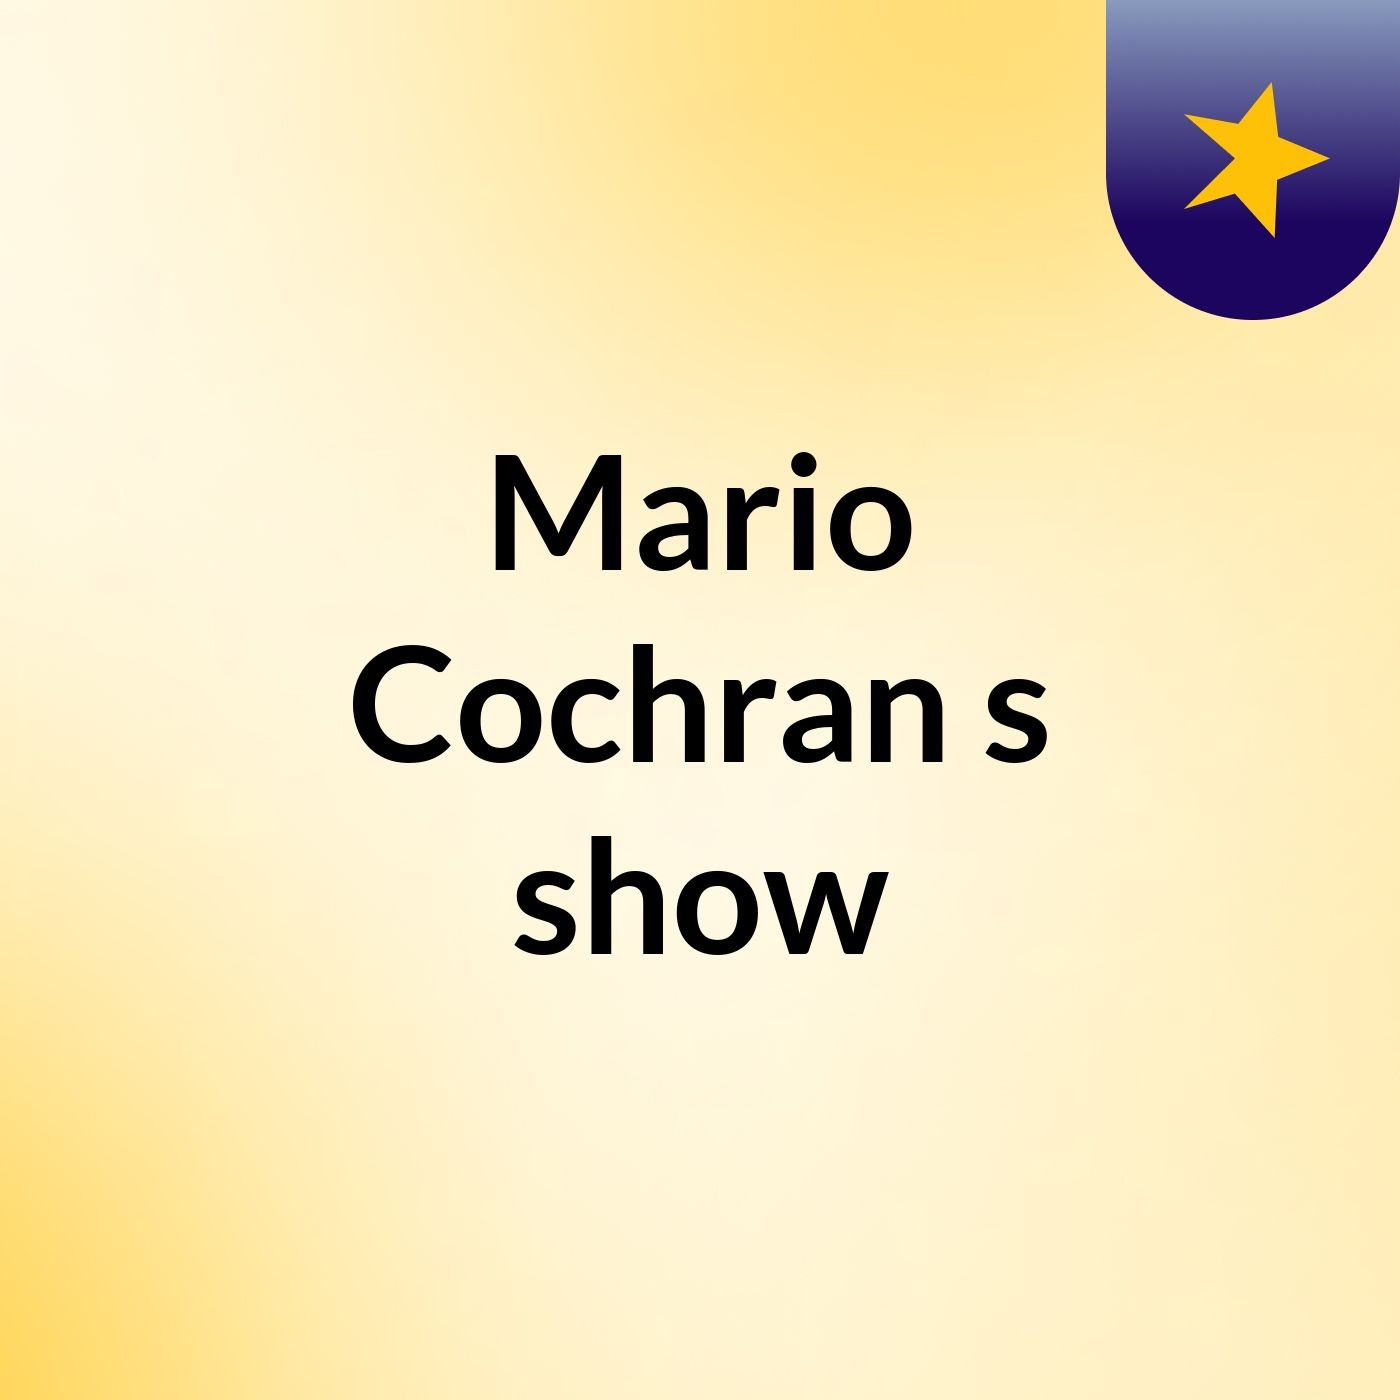 Mario Cochran's show